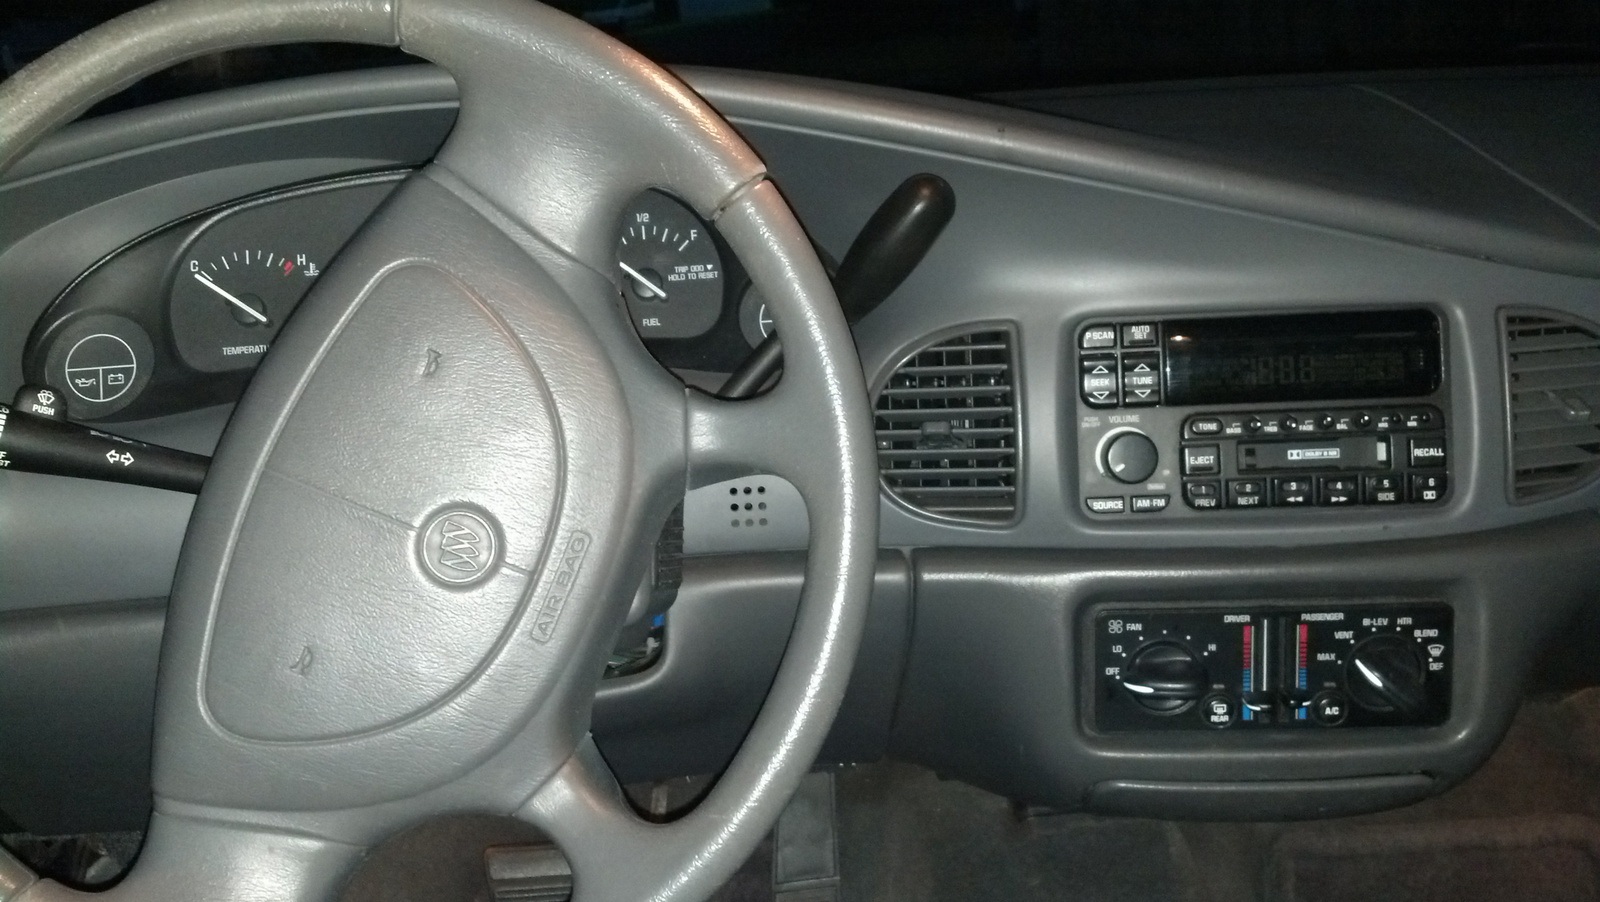 2003 buick century interior doors trim